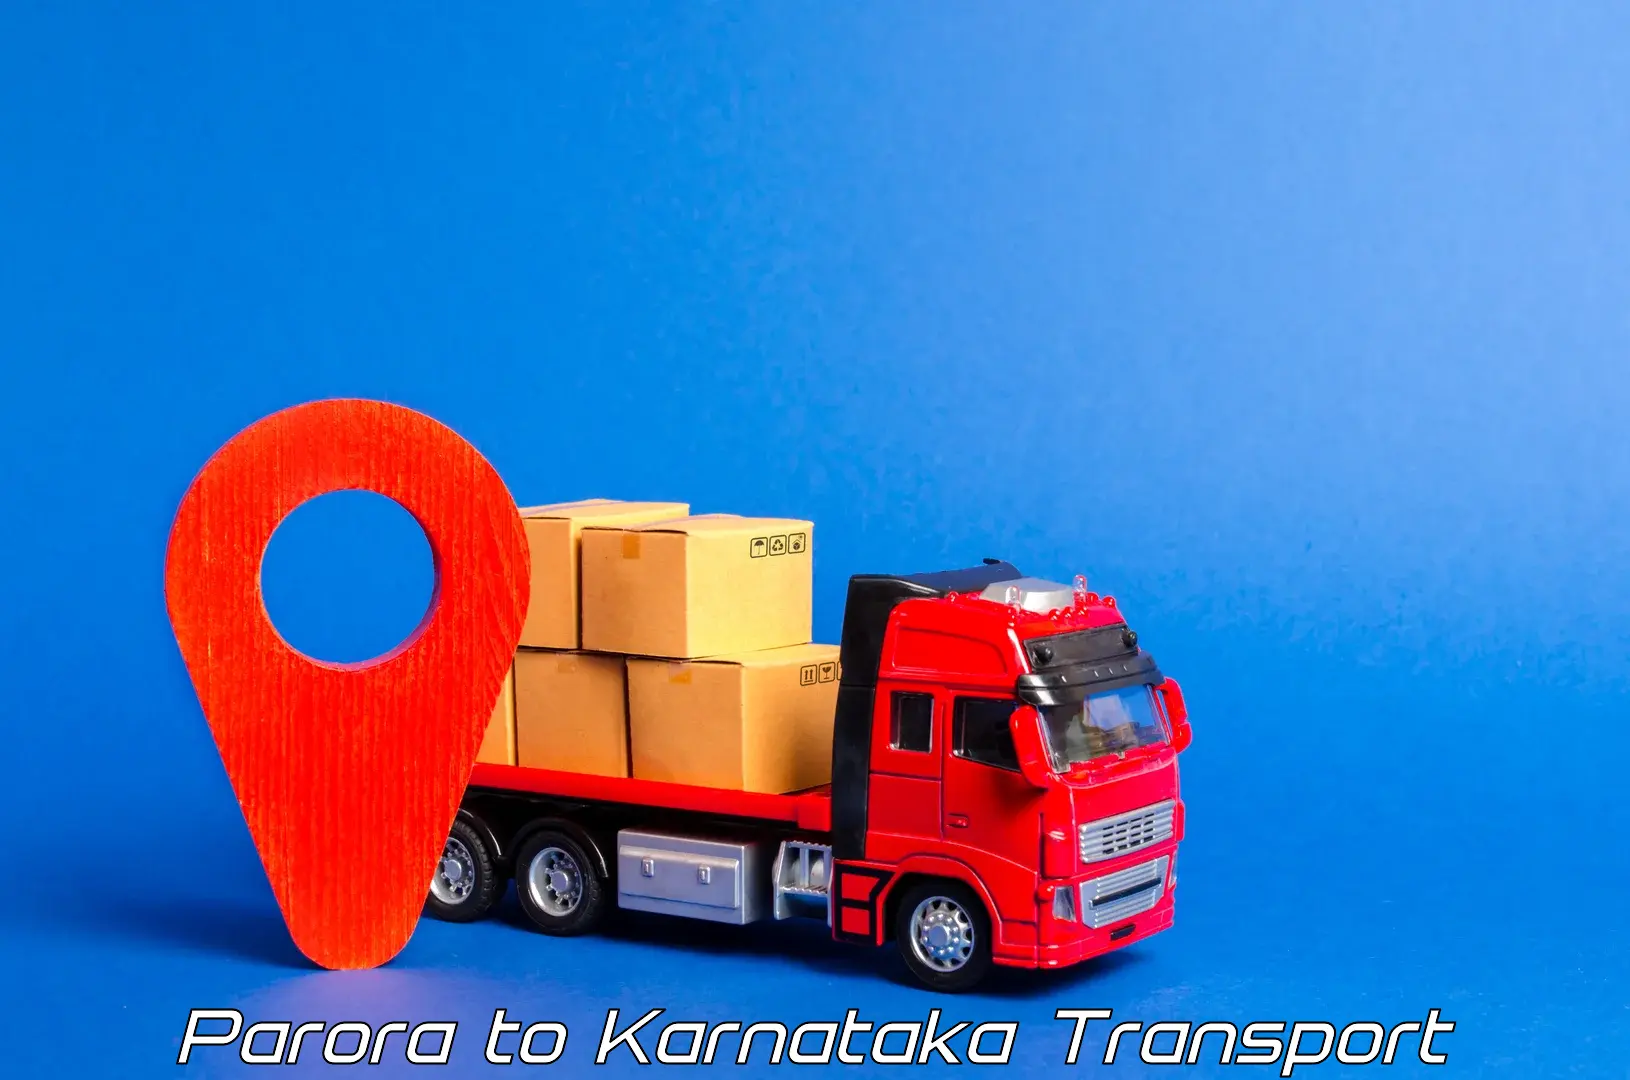 Truck transport companies in India Parora to Kanjarakatte